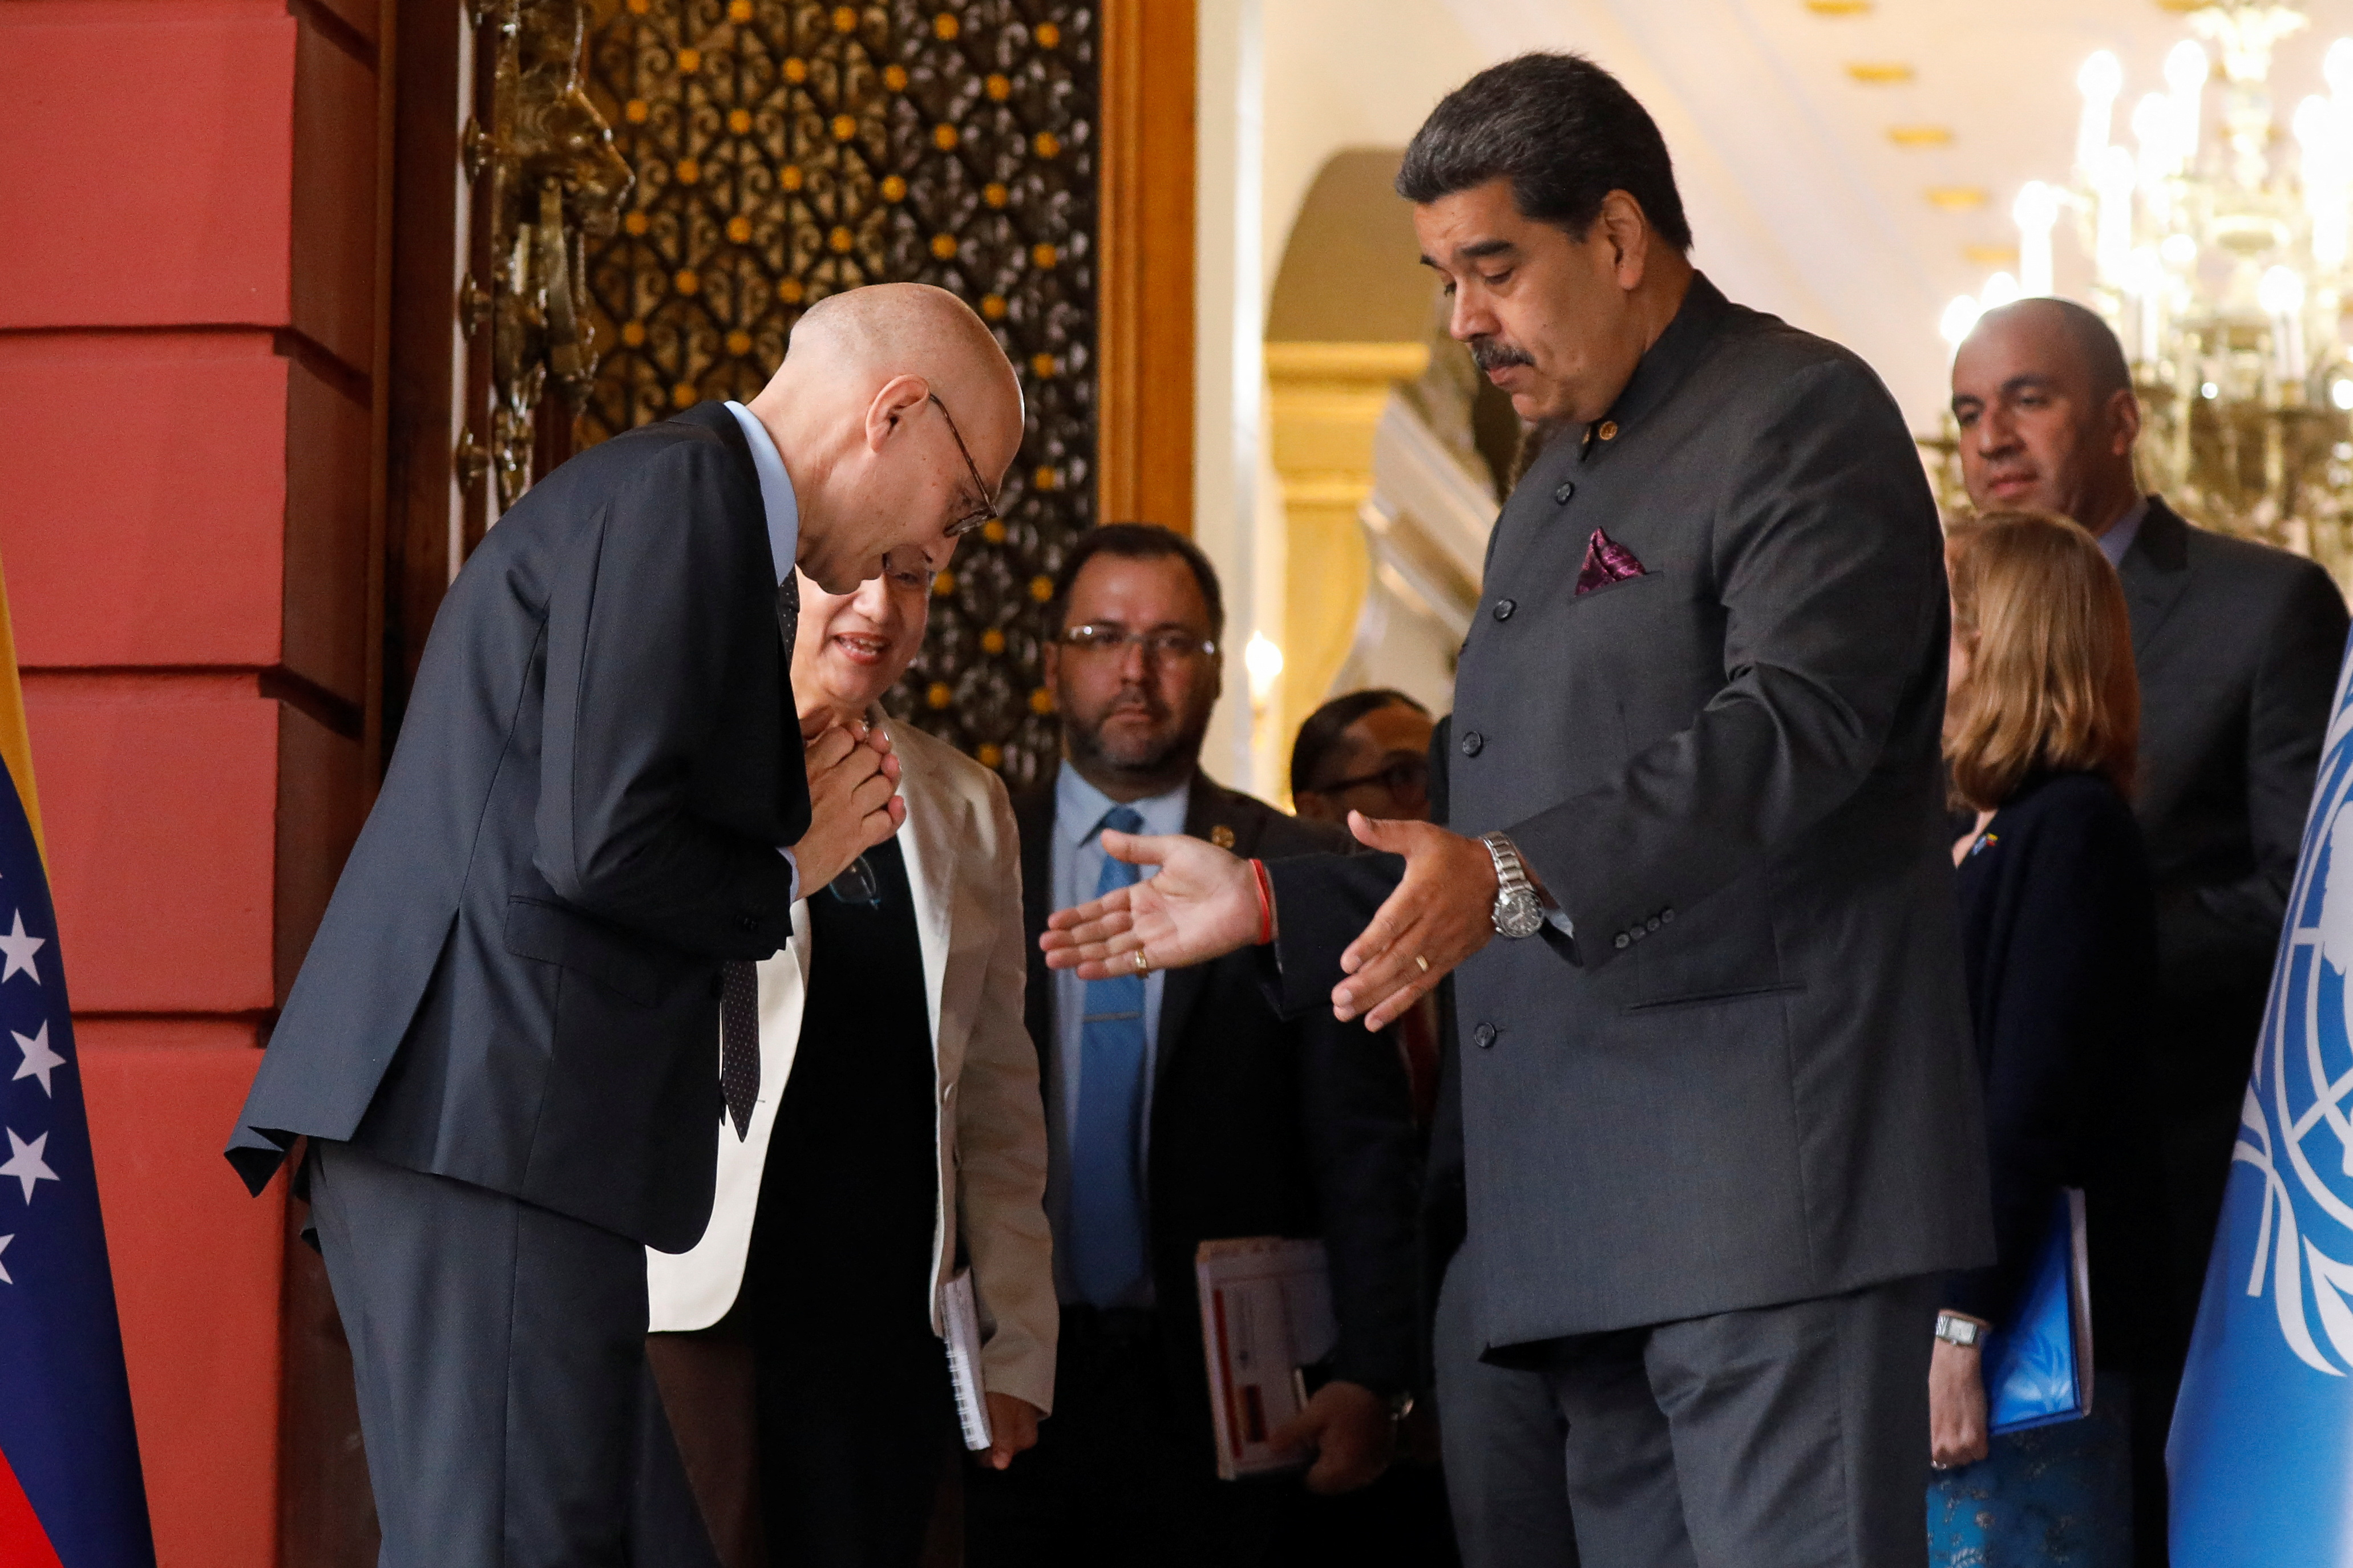 FOTO DE ARCHIVO: el Alto Comisionado de las Naciones Unidas para los Derechos Humanos, Volker Türk, hace una reverencia al salir de una reunión con el dictador Nicolás Maduro, en el Palacio de Miraflores, en Caracas, Venezuela, el pasado 27 de enero de 2023 (Reuters)